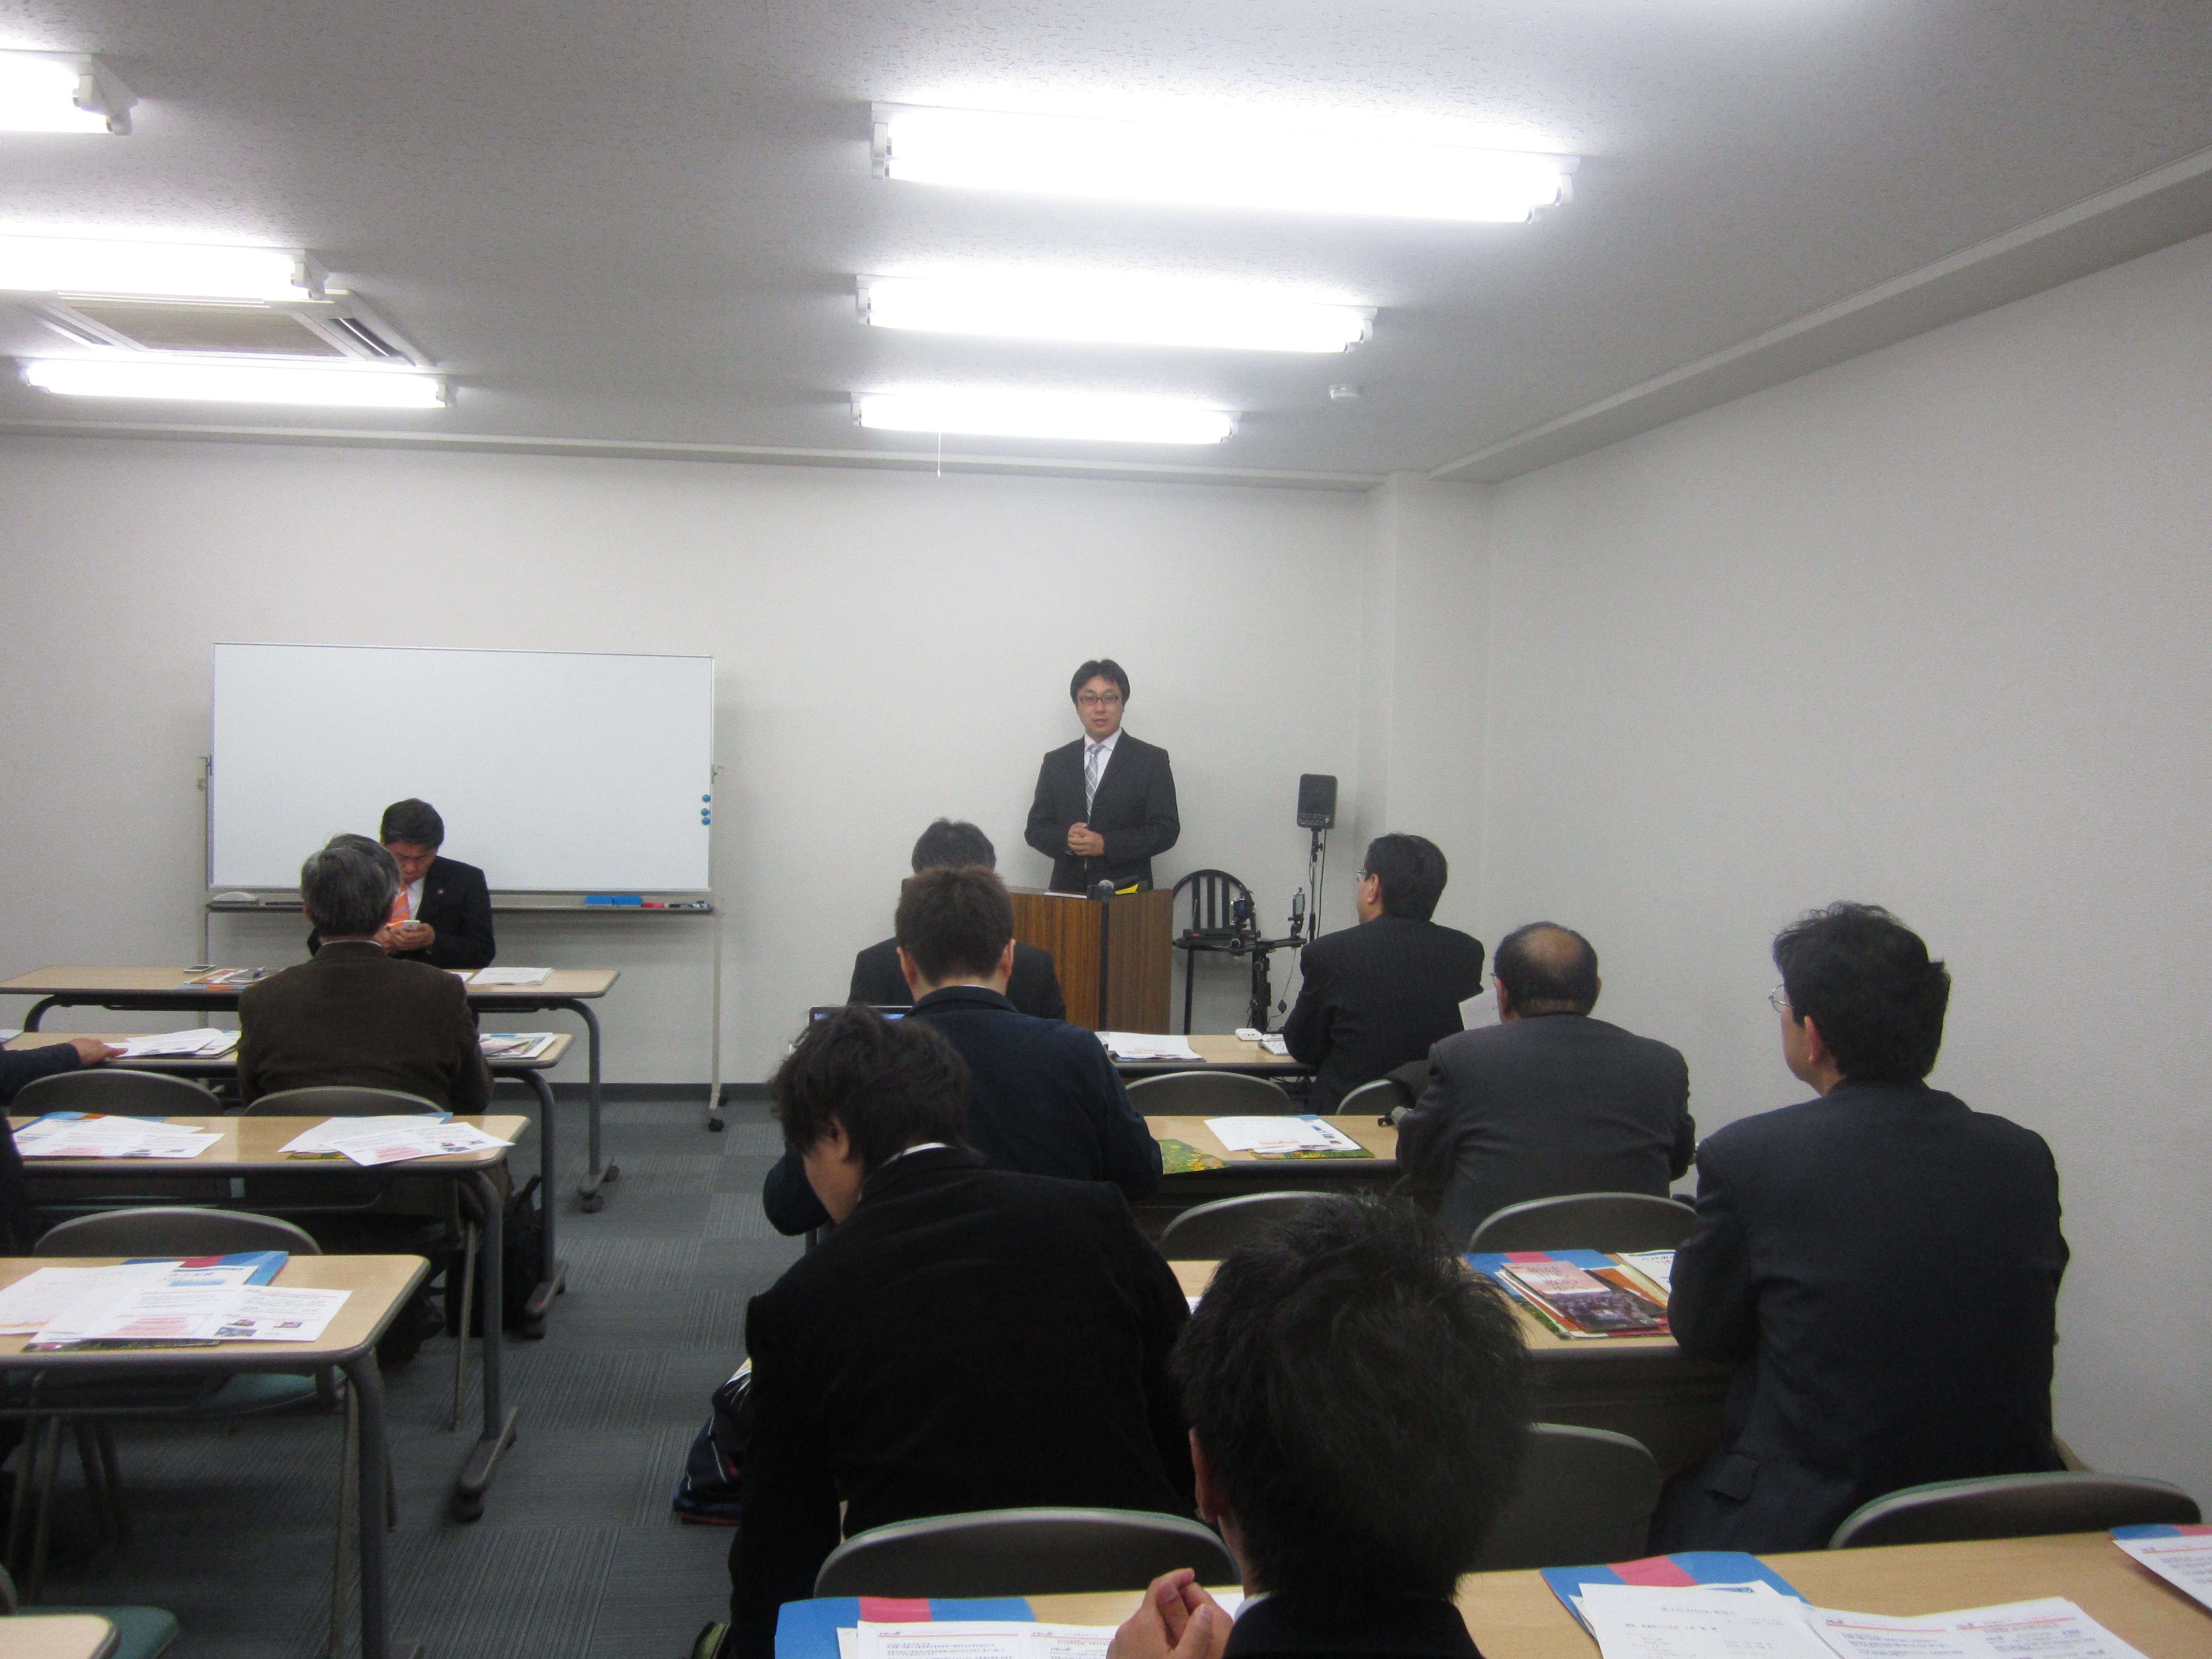 IMG 1885 - 2012年11月27日AOsuki第4回勉強会八戸市小林市長